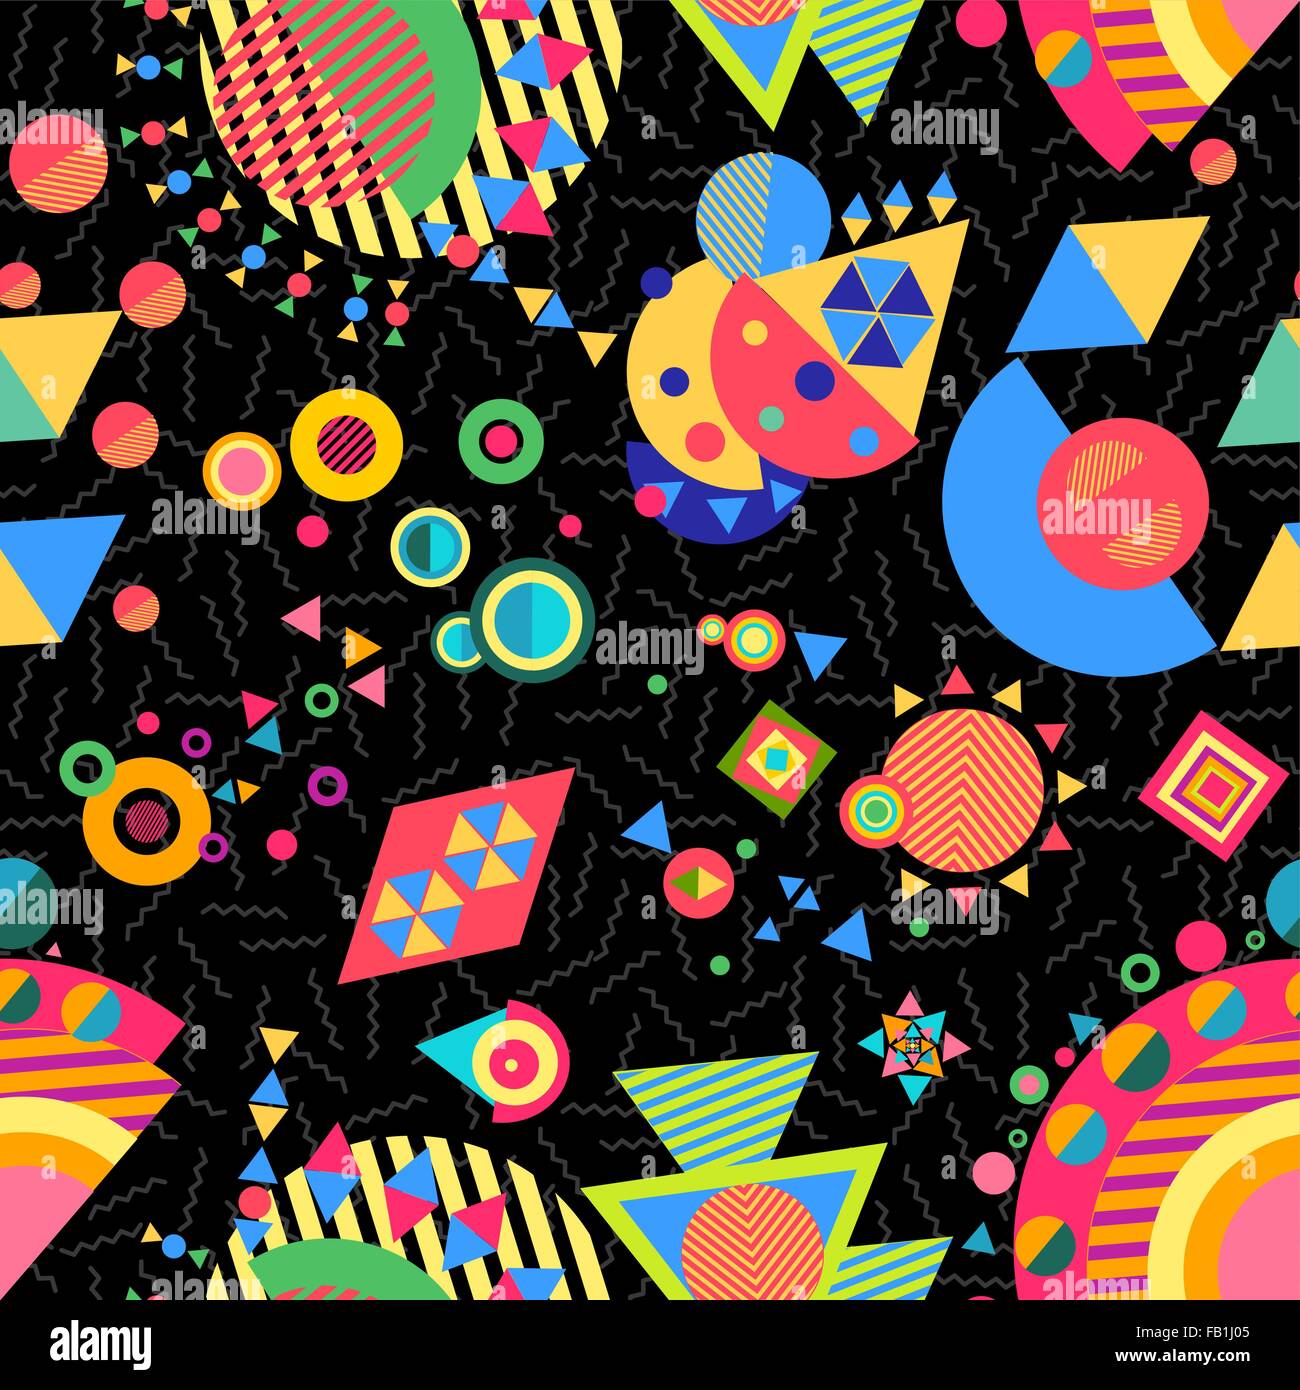 Nahtlose Muster Hintergrund, abstrakte Geometrie-Elemente im hellen mehrfarbigen modernen Stil. EPS10 Vektor. Stock Vektor